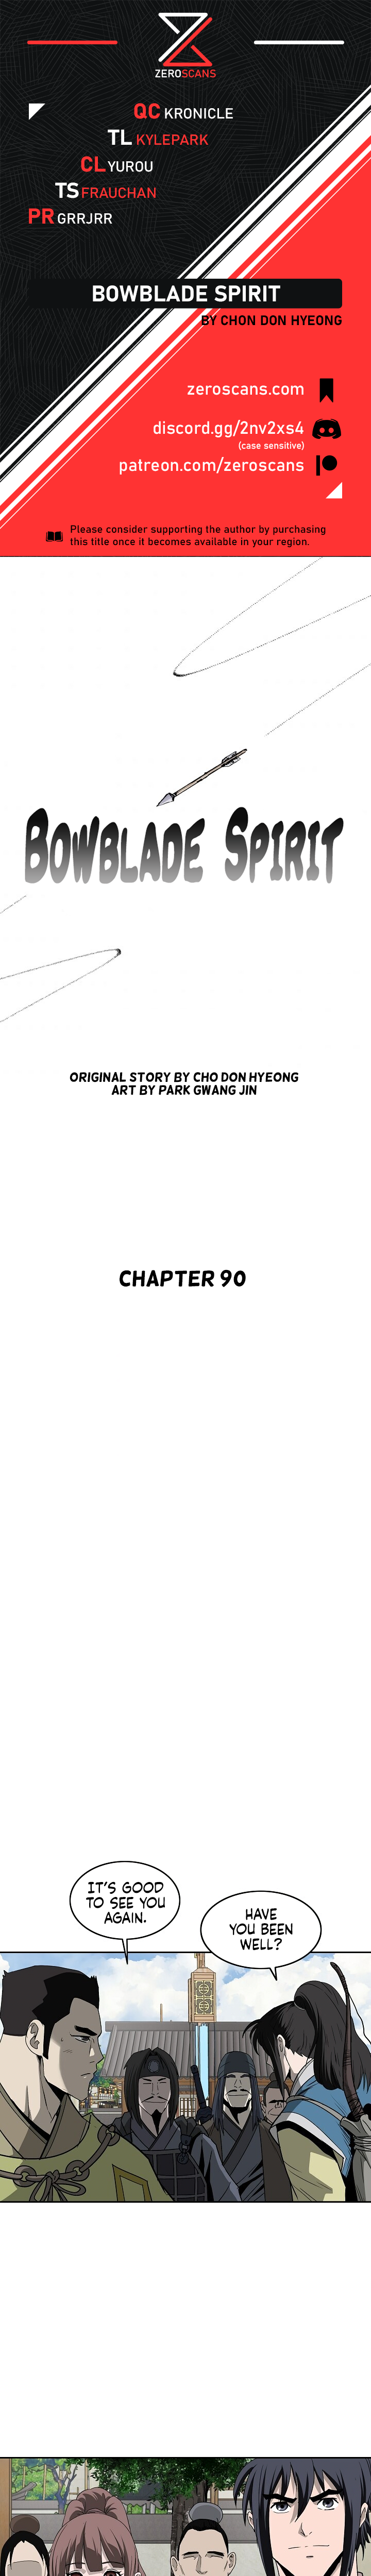 Bowblade Spirit - Chapter 8305 - Image 1